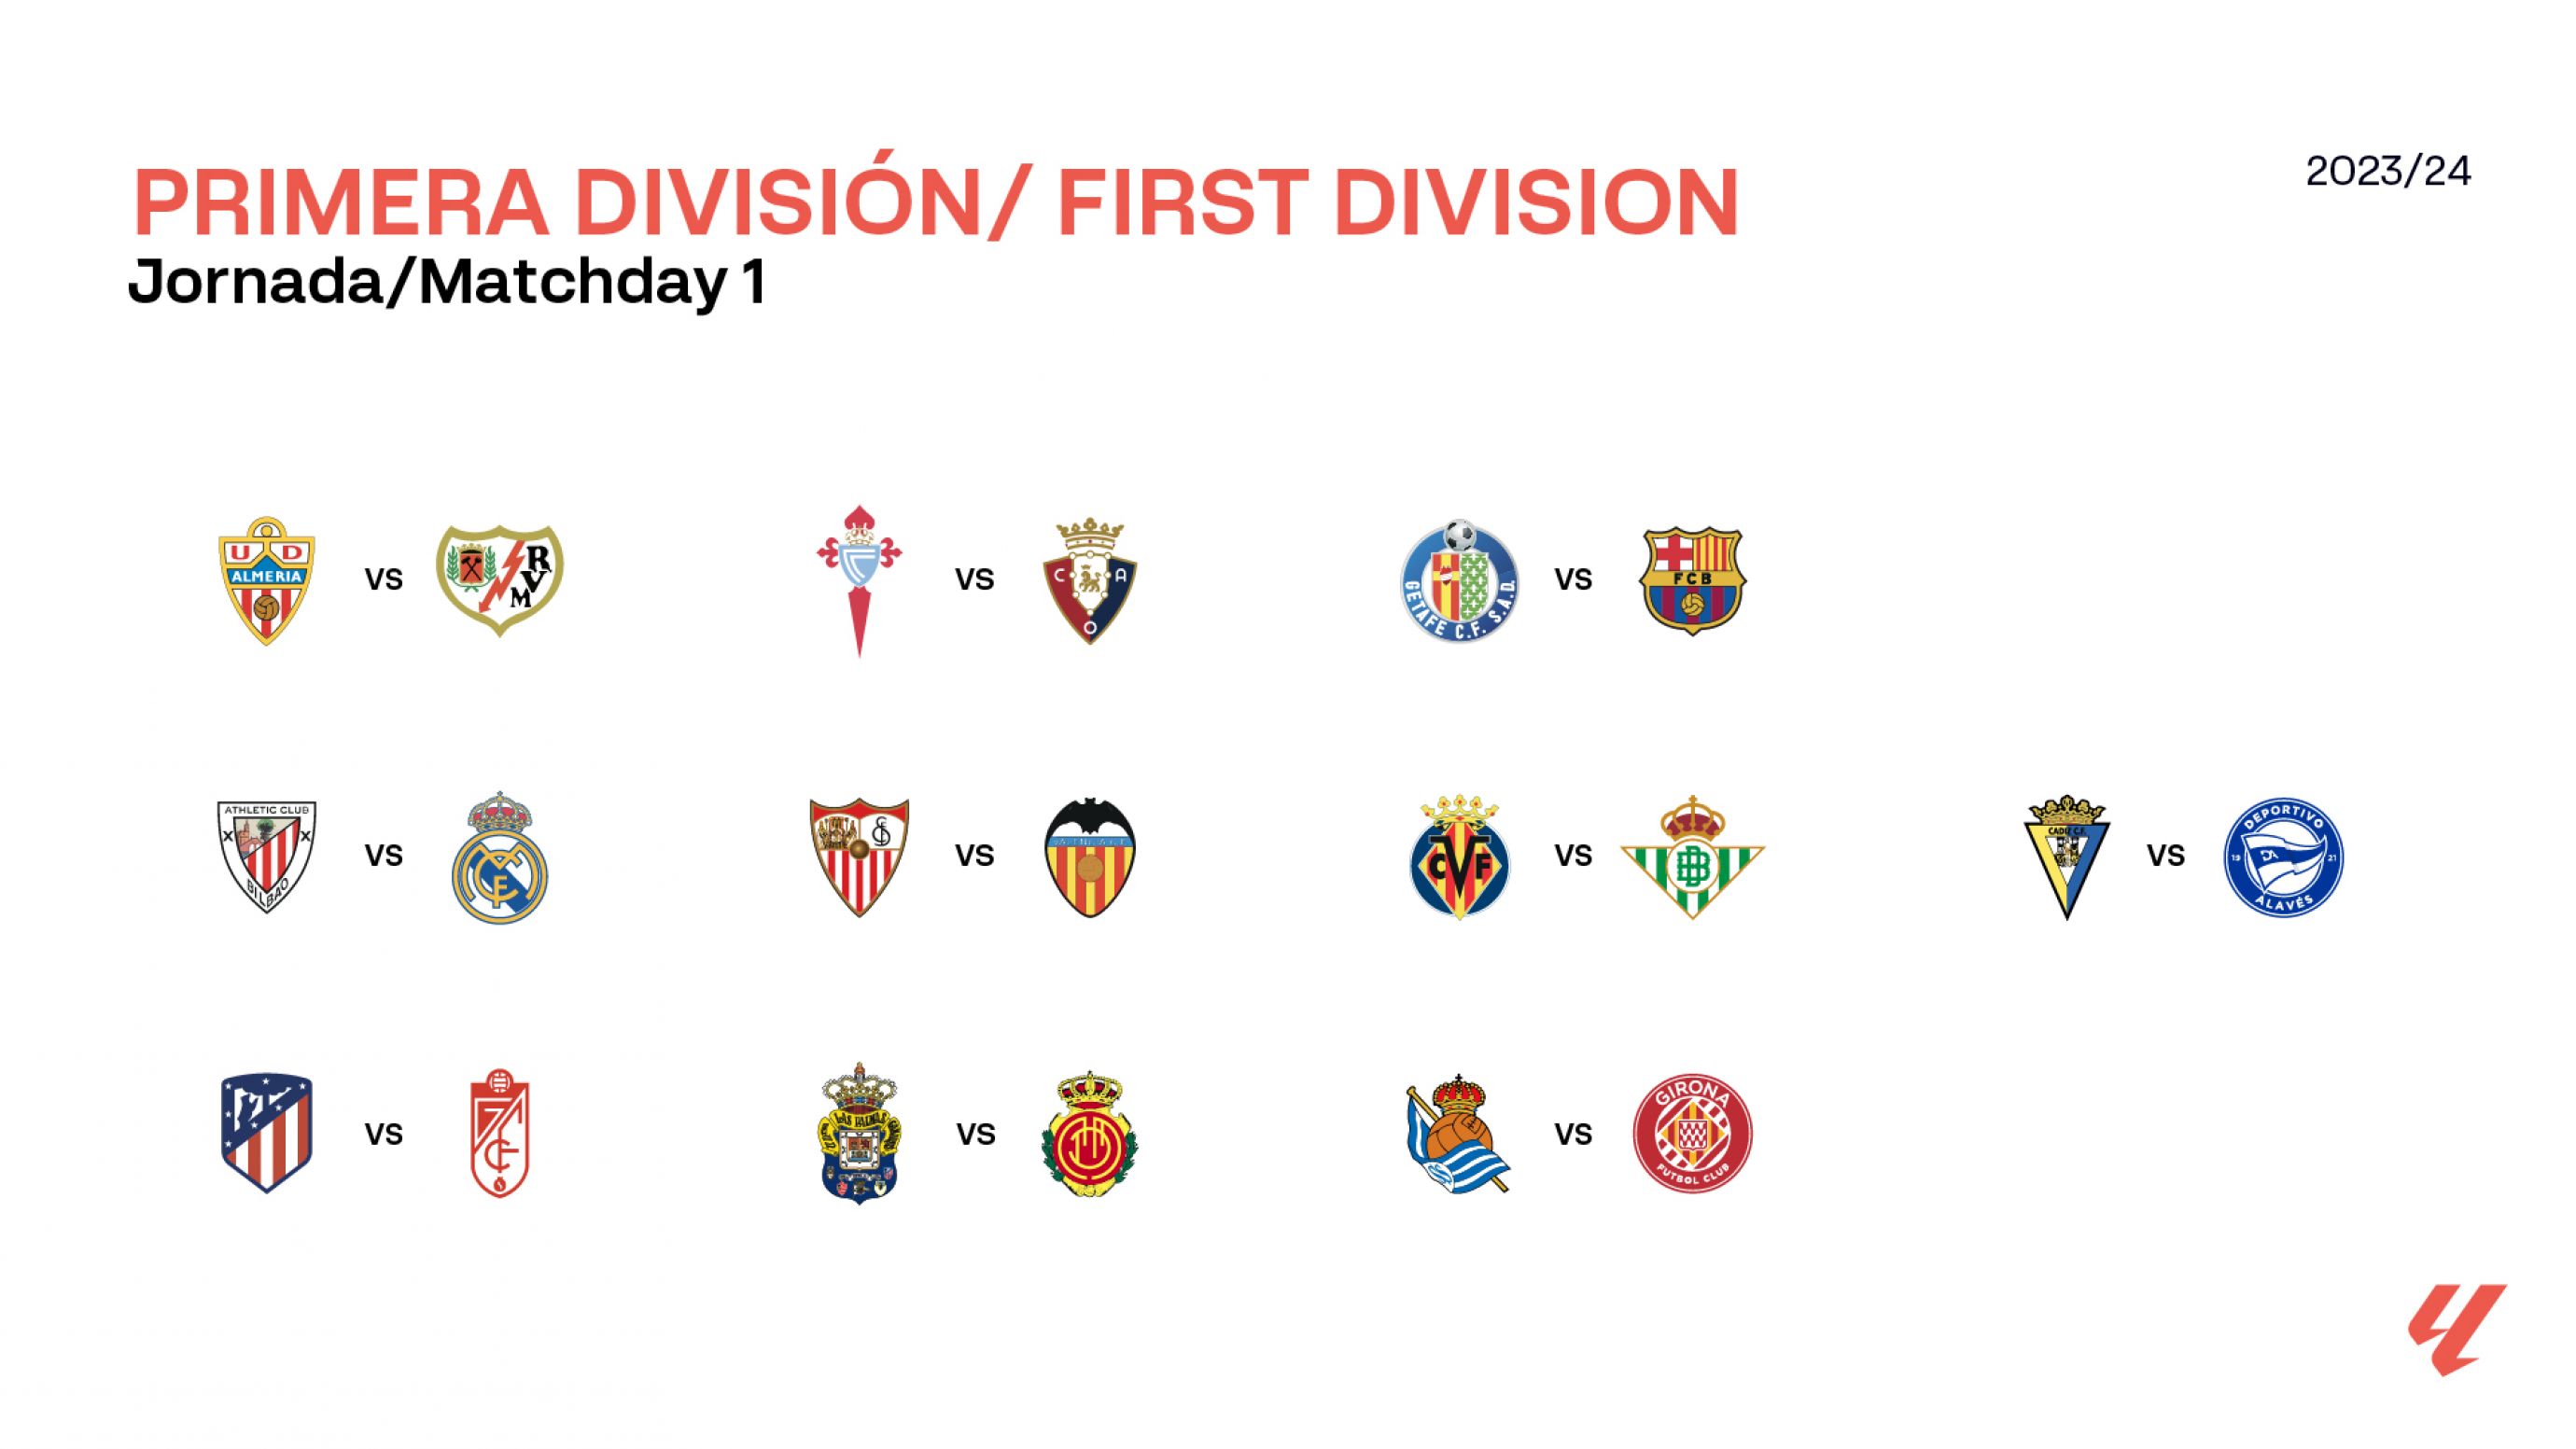 Calendario de futbol liga española